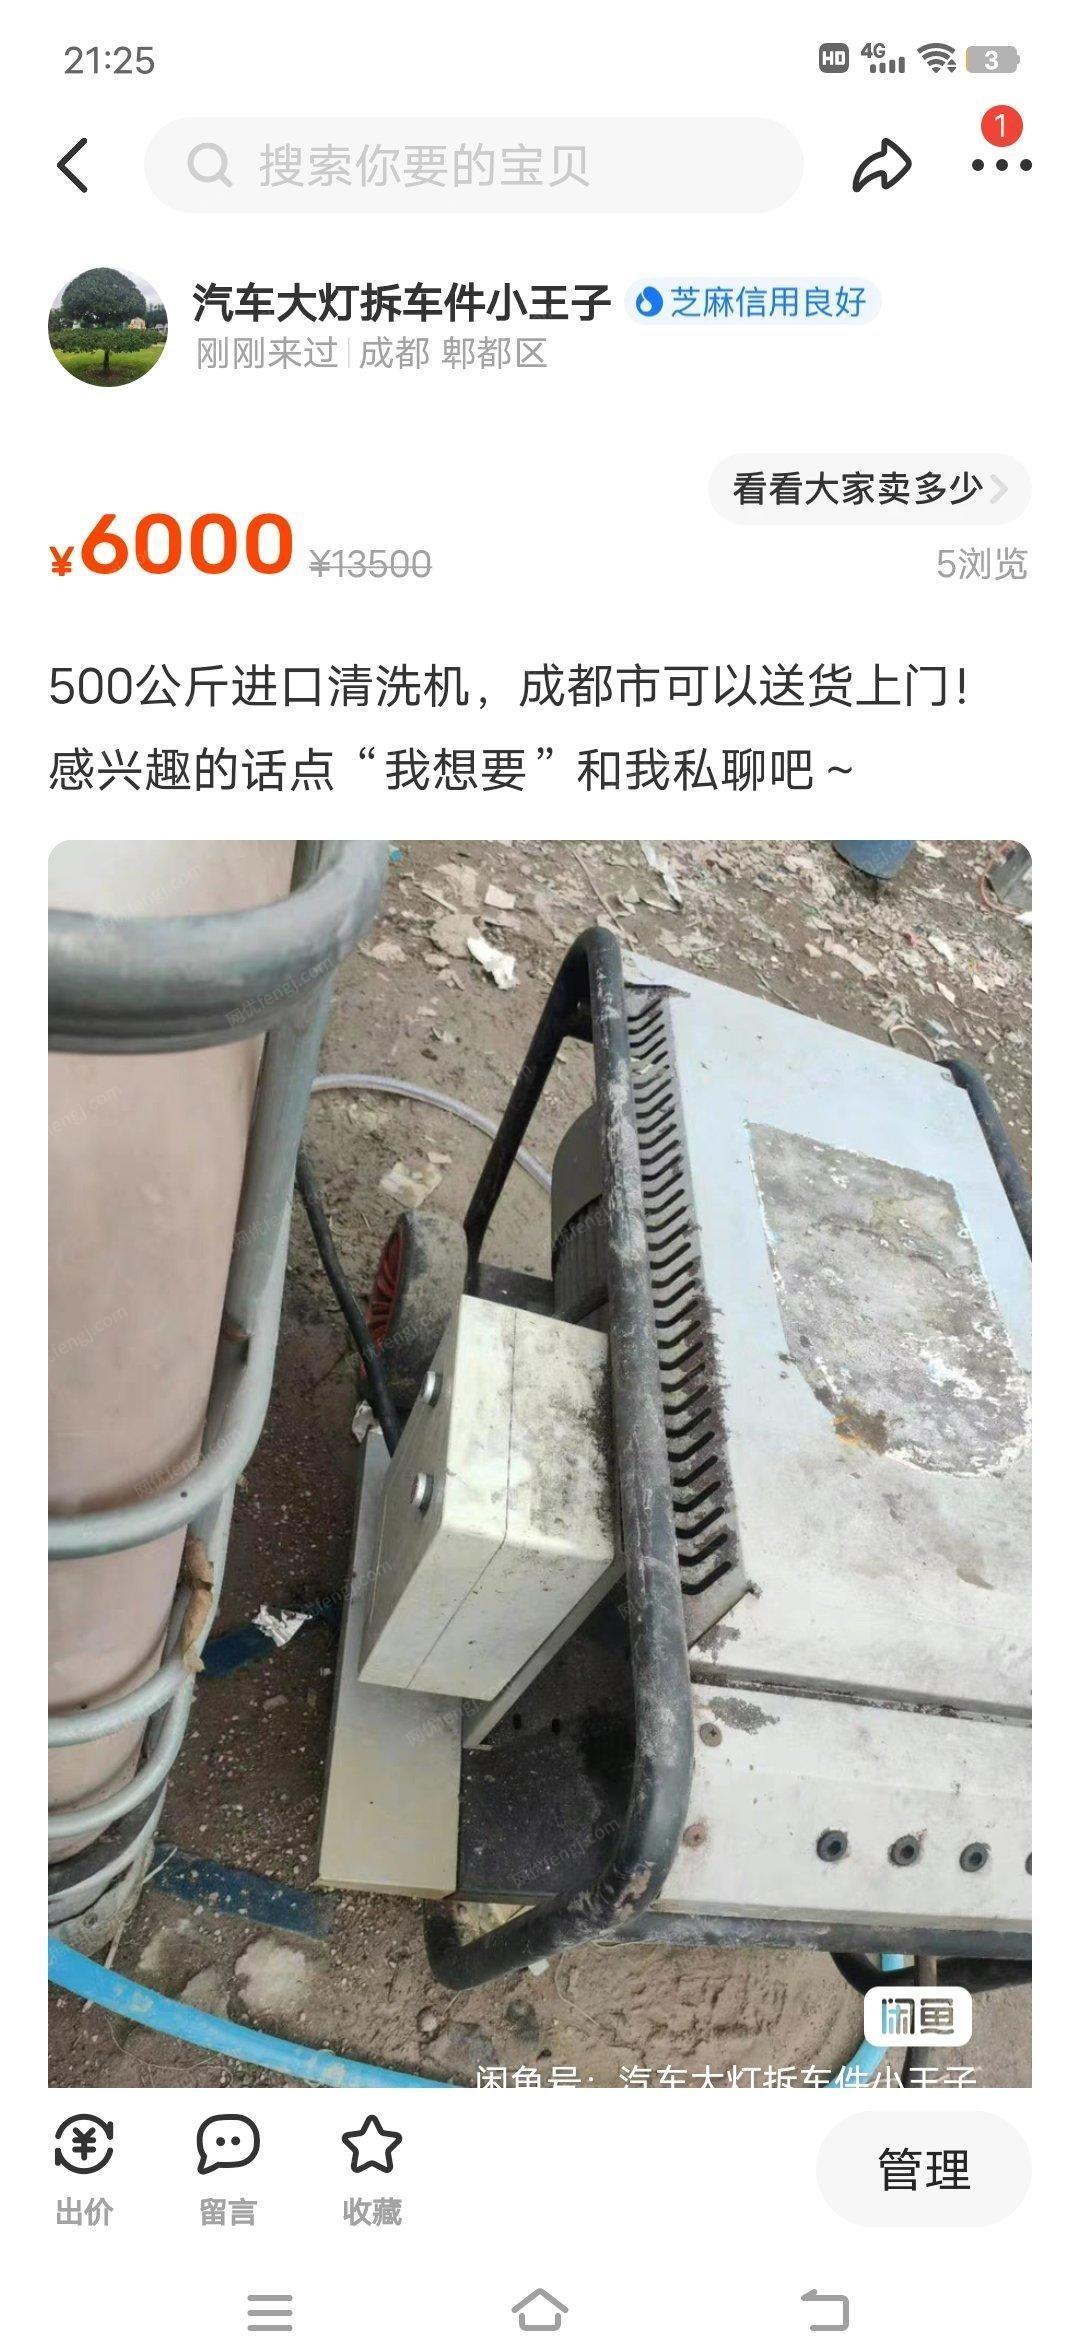 四川成都500公斤清洗机进口水泵出售